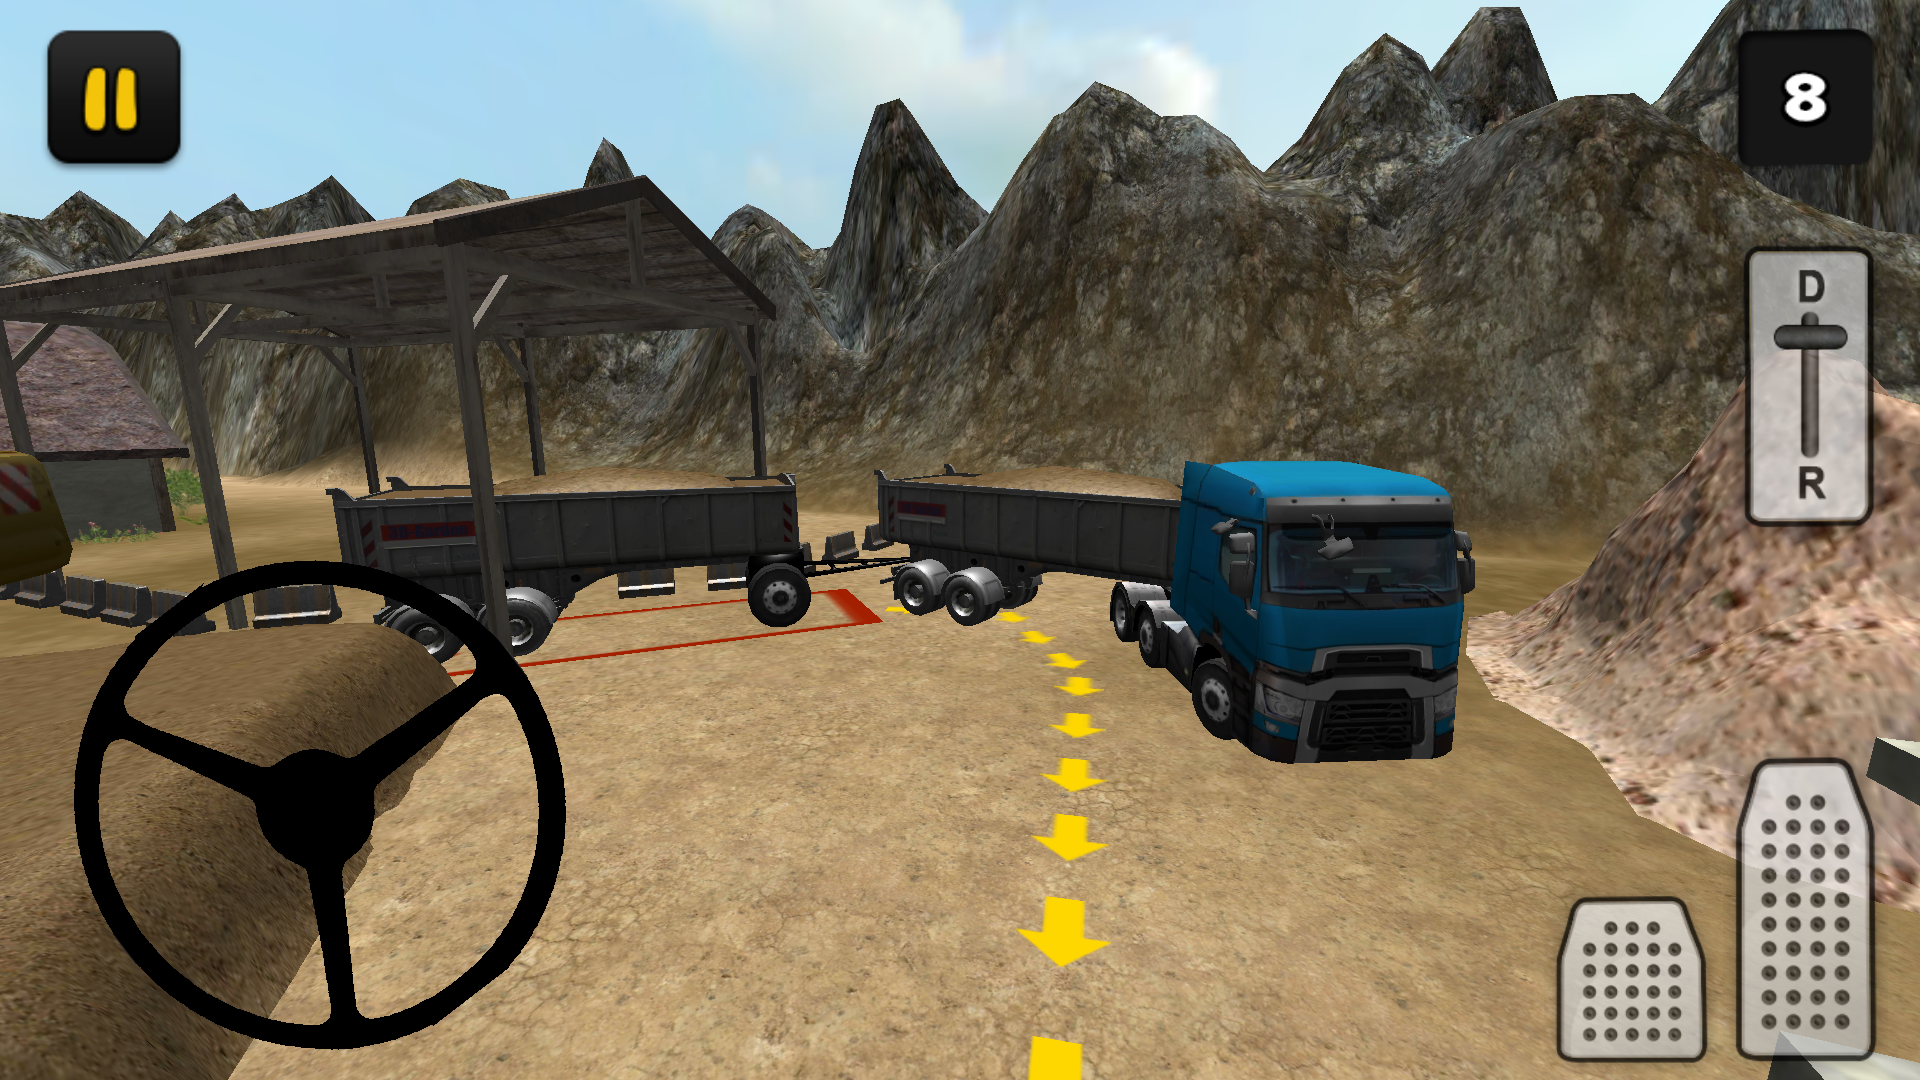 Screenshot 1 of Extremo Caminhão 3D: Areia 